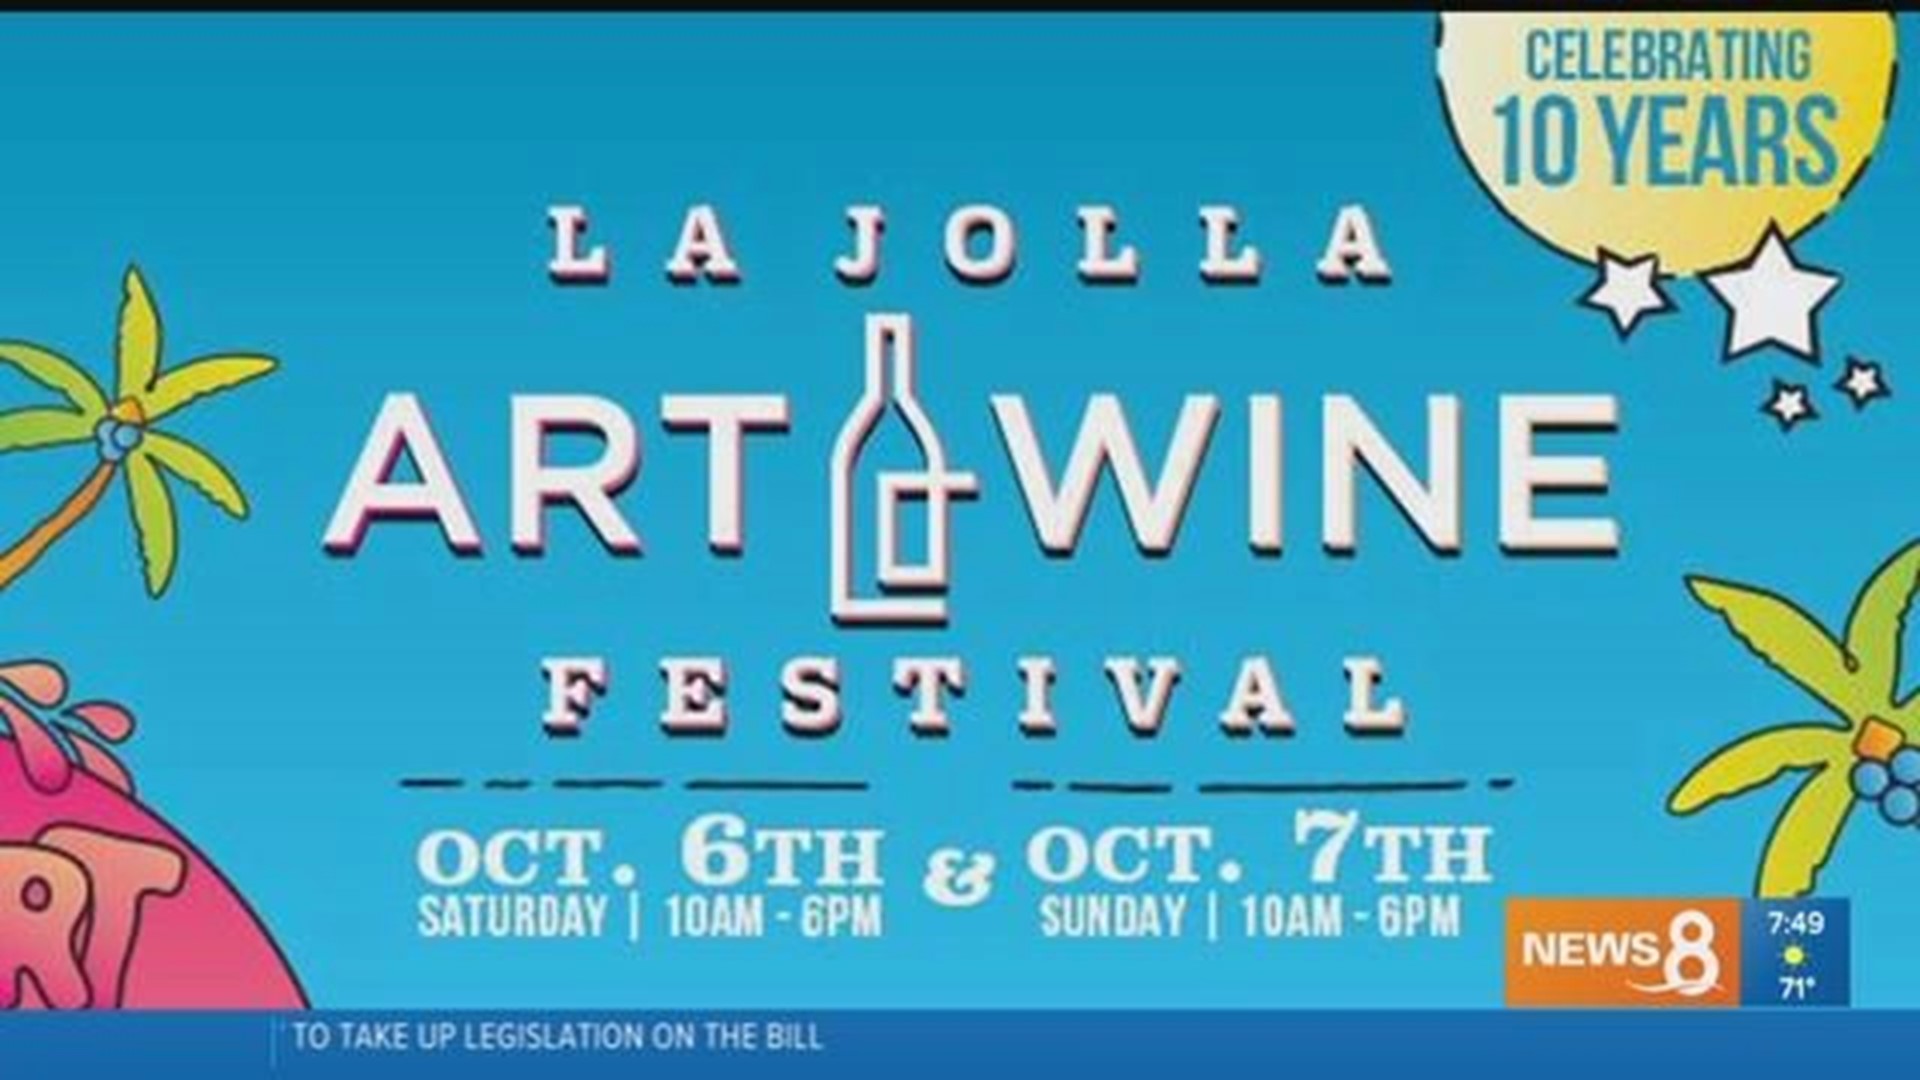 The La Jolla Art and Wine Festival